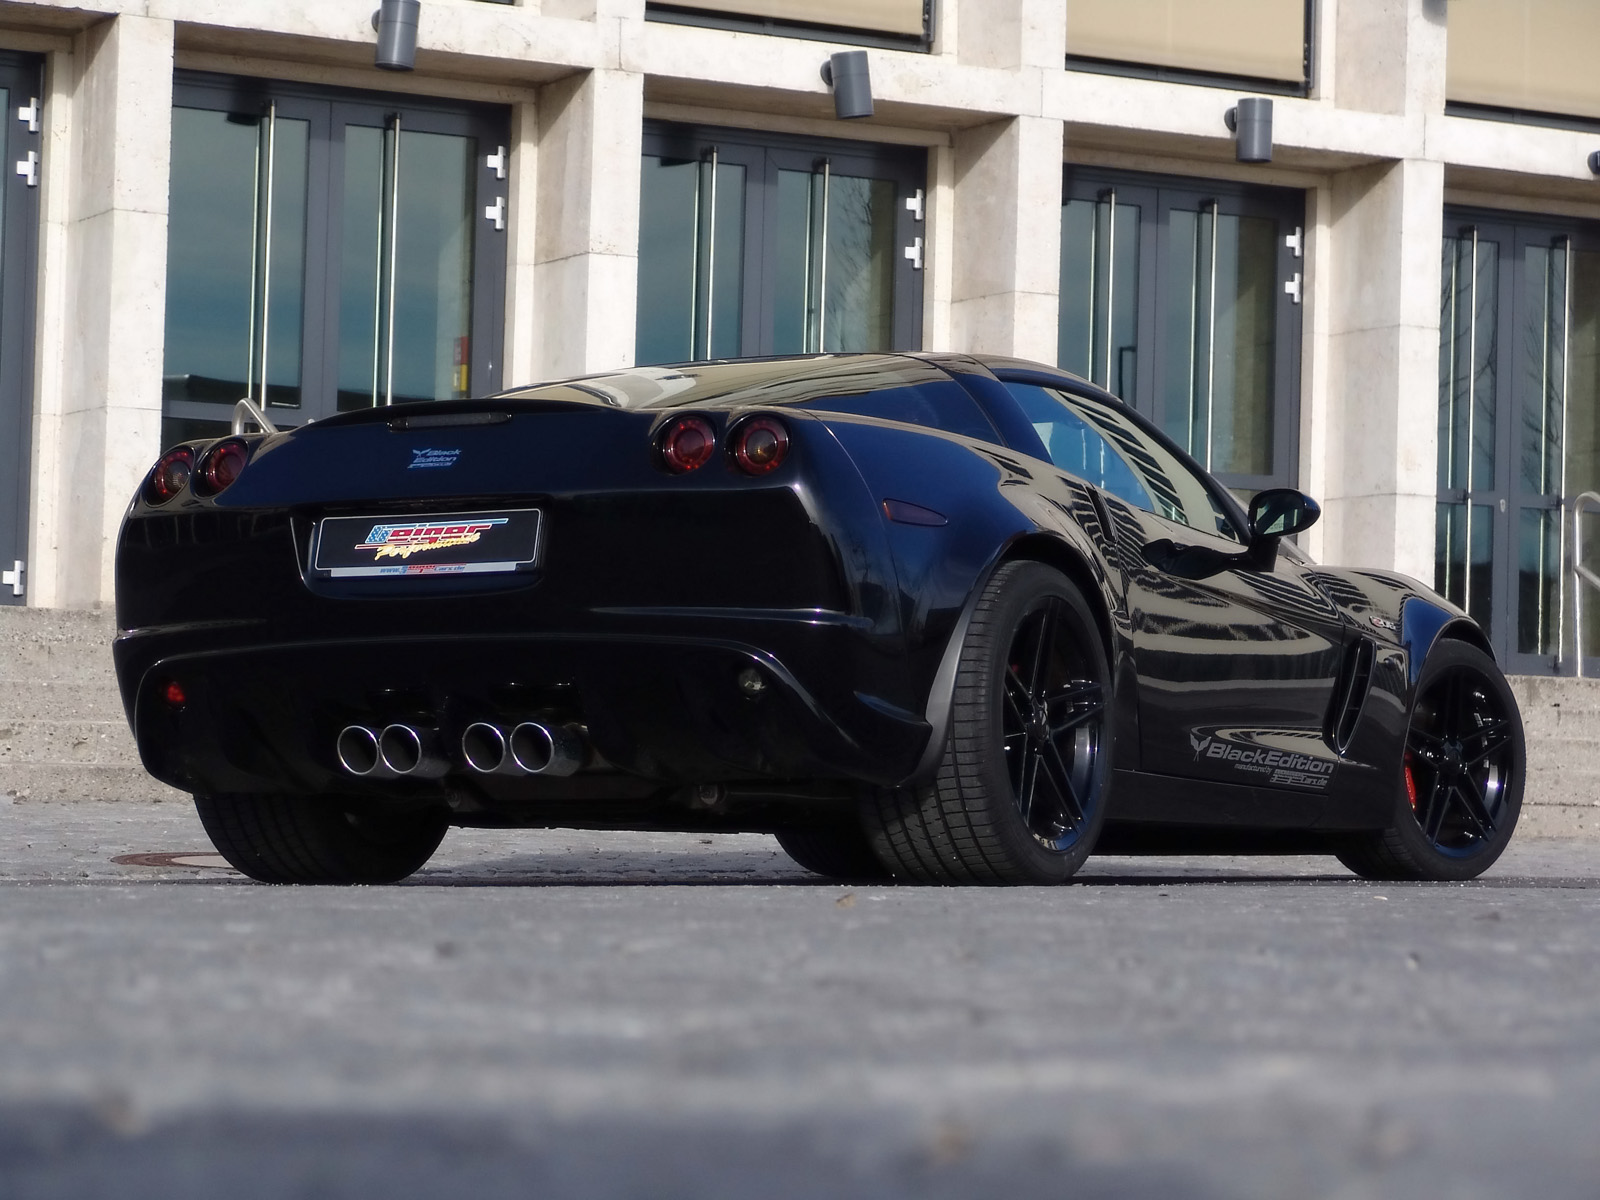 Geigercars Corvette Z06 Black Edition photo 54112